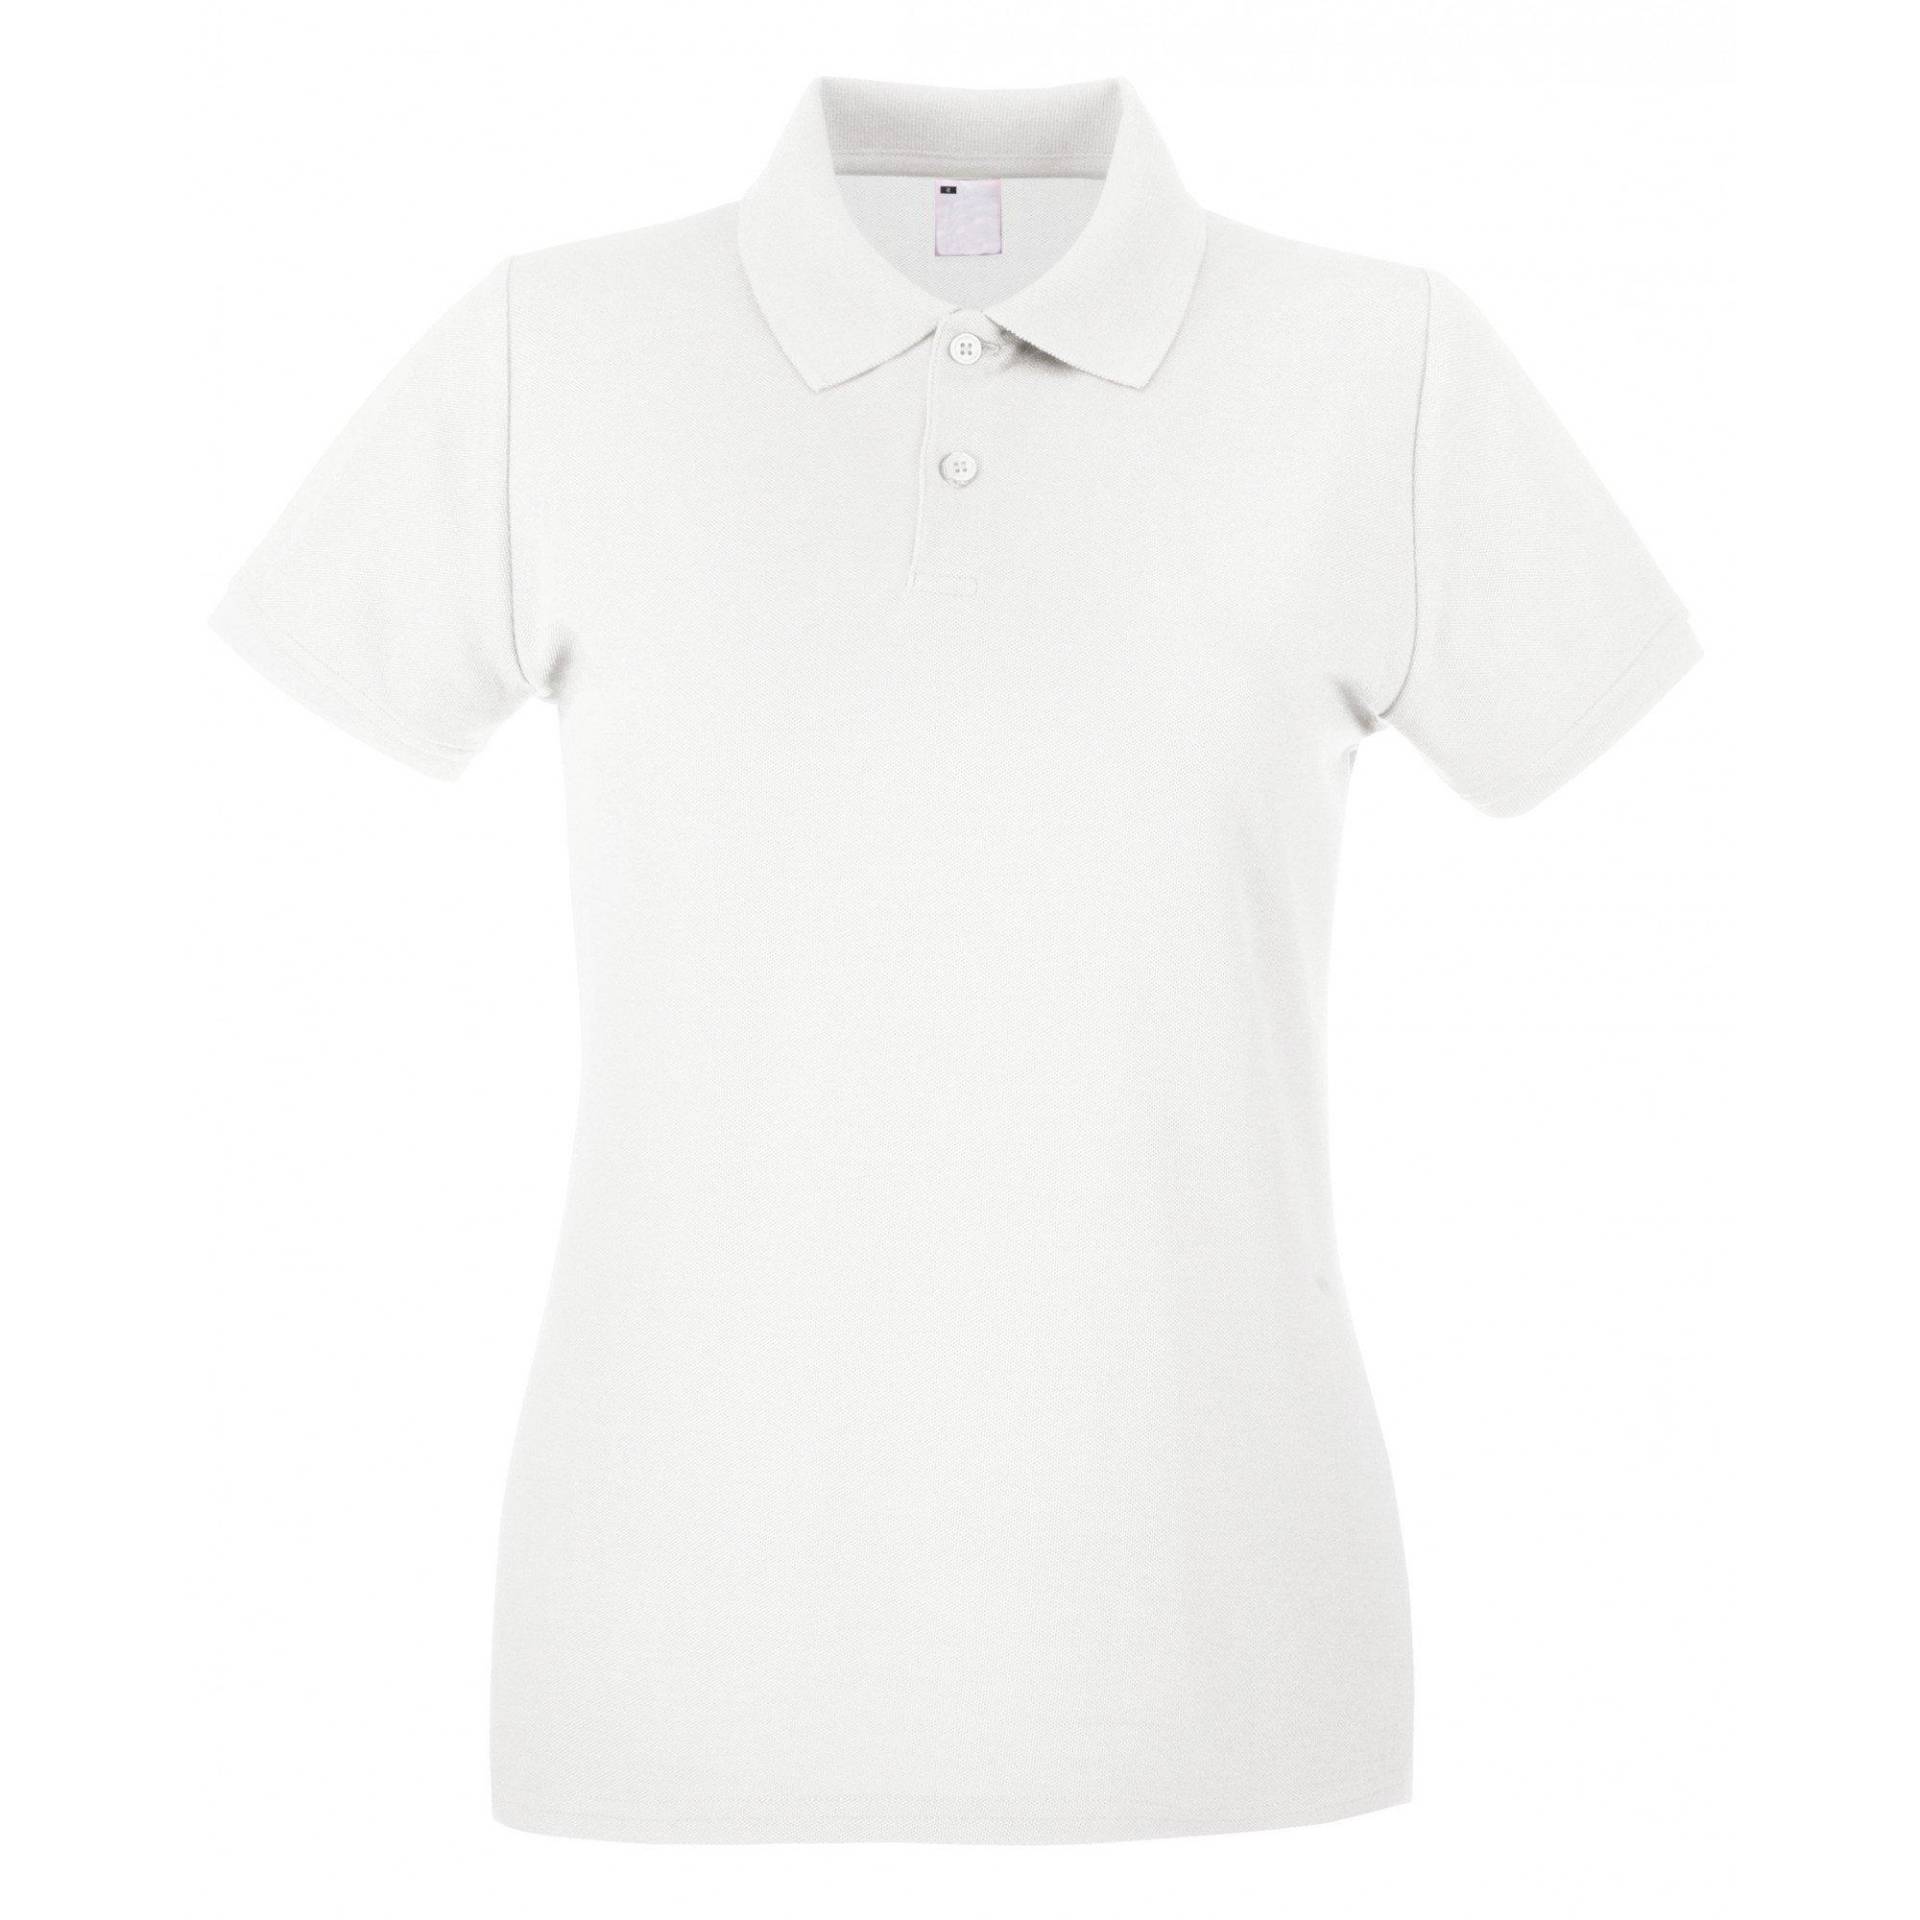 Poloshirt, Figurbetont, Kurzärmlig Damen Weiss XL von Universal Textiles